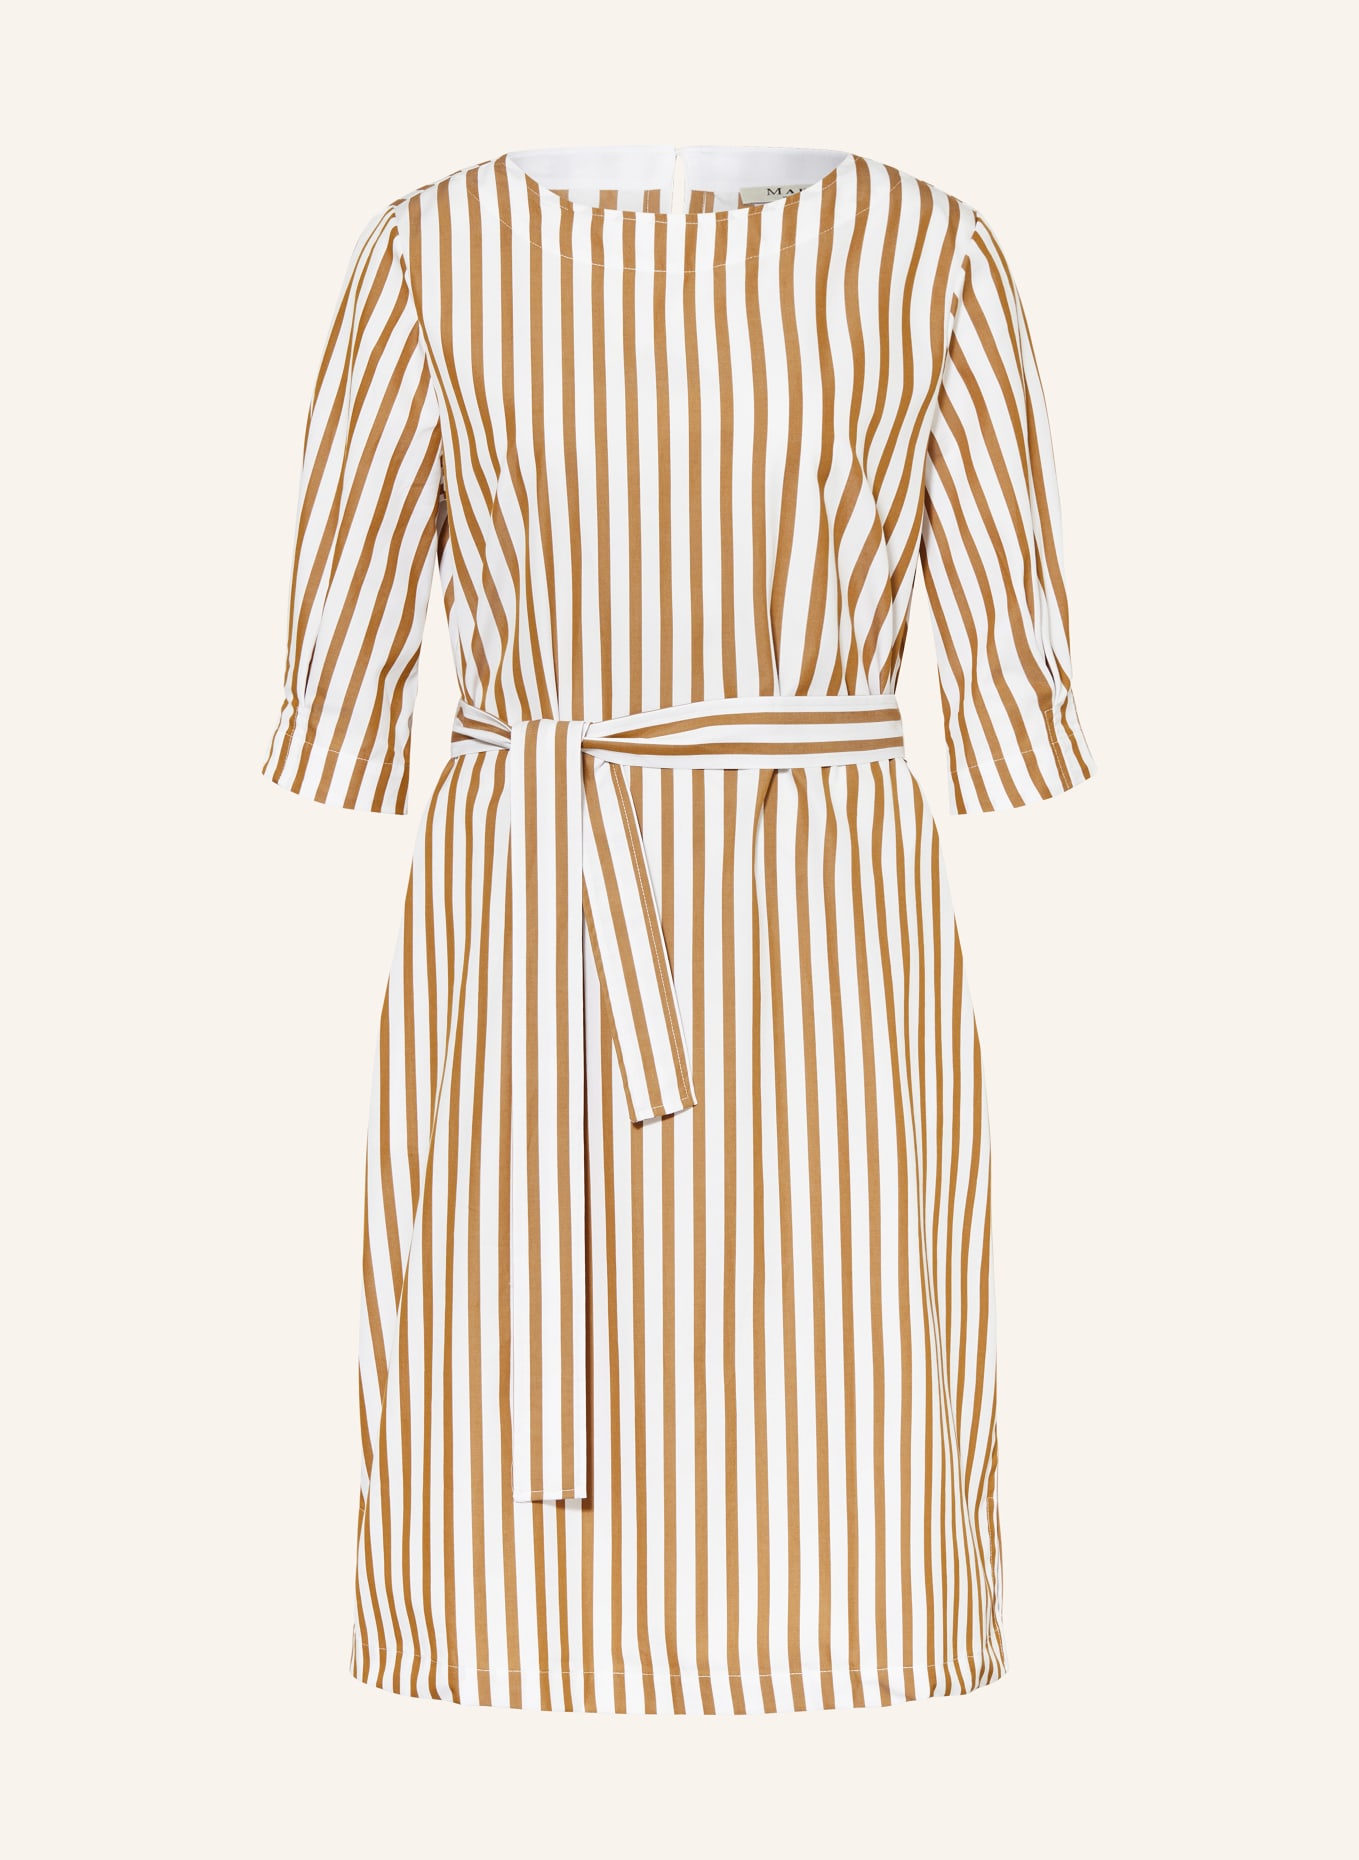 MAERZ MUENCHEN Kleid mit 3/4-Arm, Farbe: COGNAC/ WEISS (Bild 1)